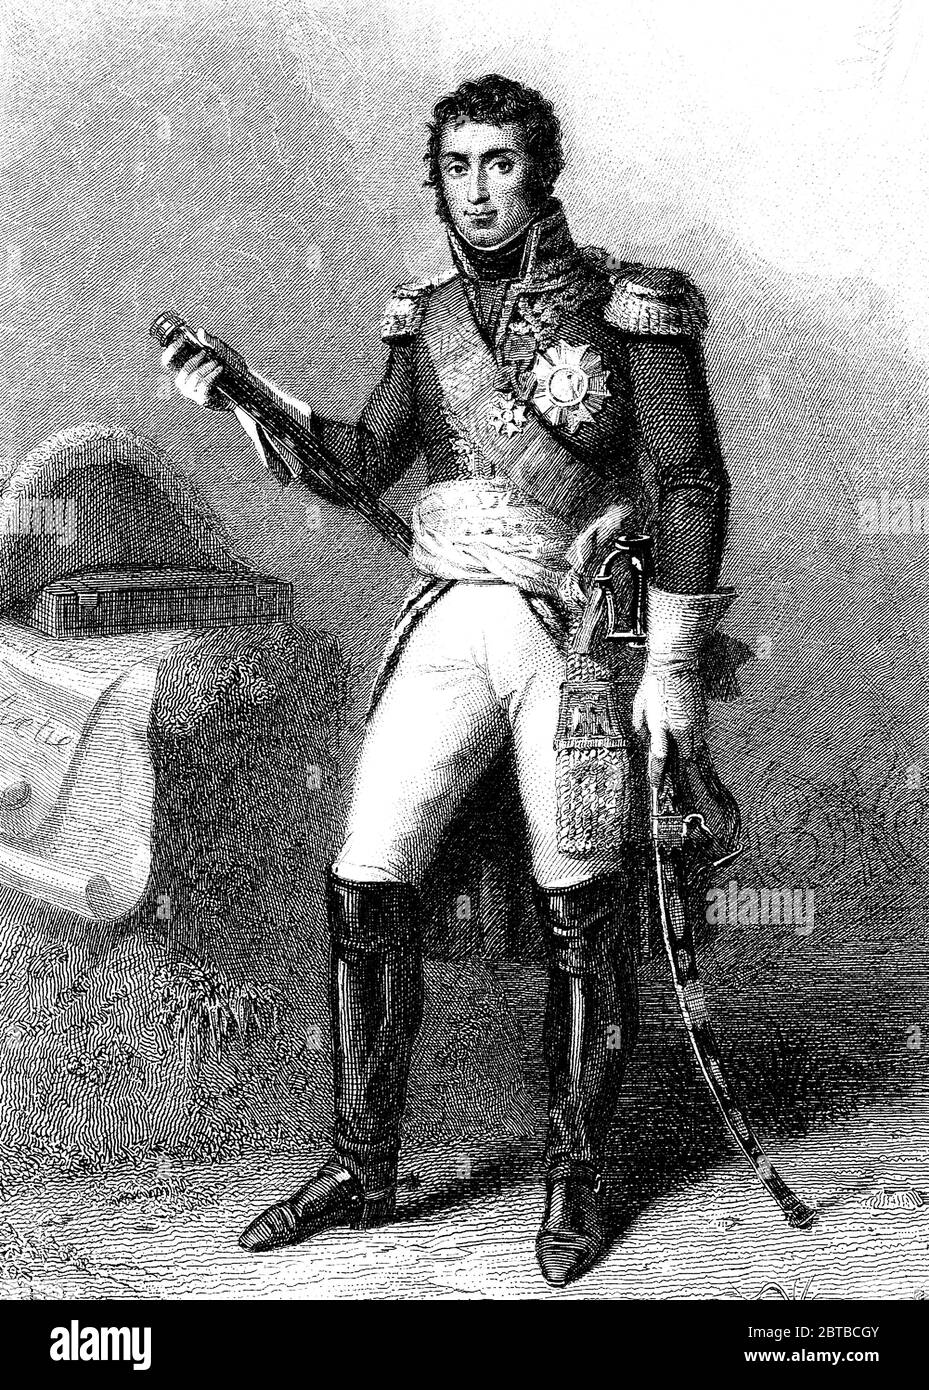 1810 ca, FRANCIA: Il generale francese André Masséna (Andrea Massena, 1758-1817), duca di RIVOLI e principe di ESSLING. Al tempo dell'imperatore NAPOLEONE i BONAPARTE ( 1769 - 1821 ). Incisione di un artista sconosciuto dopo il ritratto originale di Antoine-Jean Gros , 1853 . - ritratto - ritratto - Generale - NAPOLEONE - Napoleone - FOTO STORICHE - STORIA - regalità - reali - nobili - nobiltà - nobili - nobiltà francese e italiana - Napoleone - imperatore - Imperatore - FRANCIA - uniforme militare - divisa uniforme militare - incisione - Incisione --- Archivio GBB Foto Stock